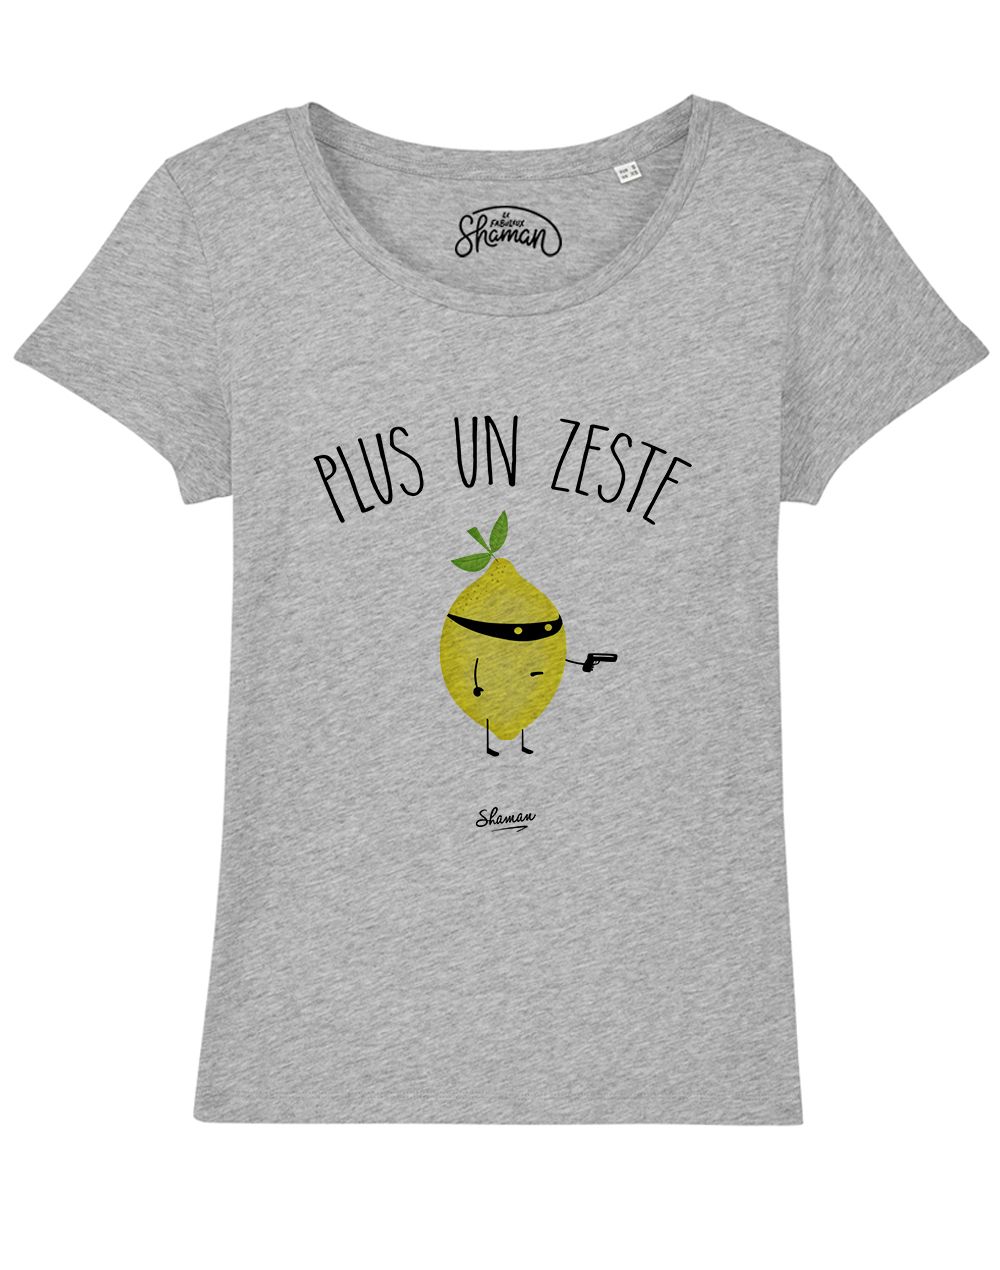 T-shirt "Plus un zeste"